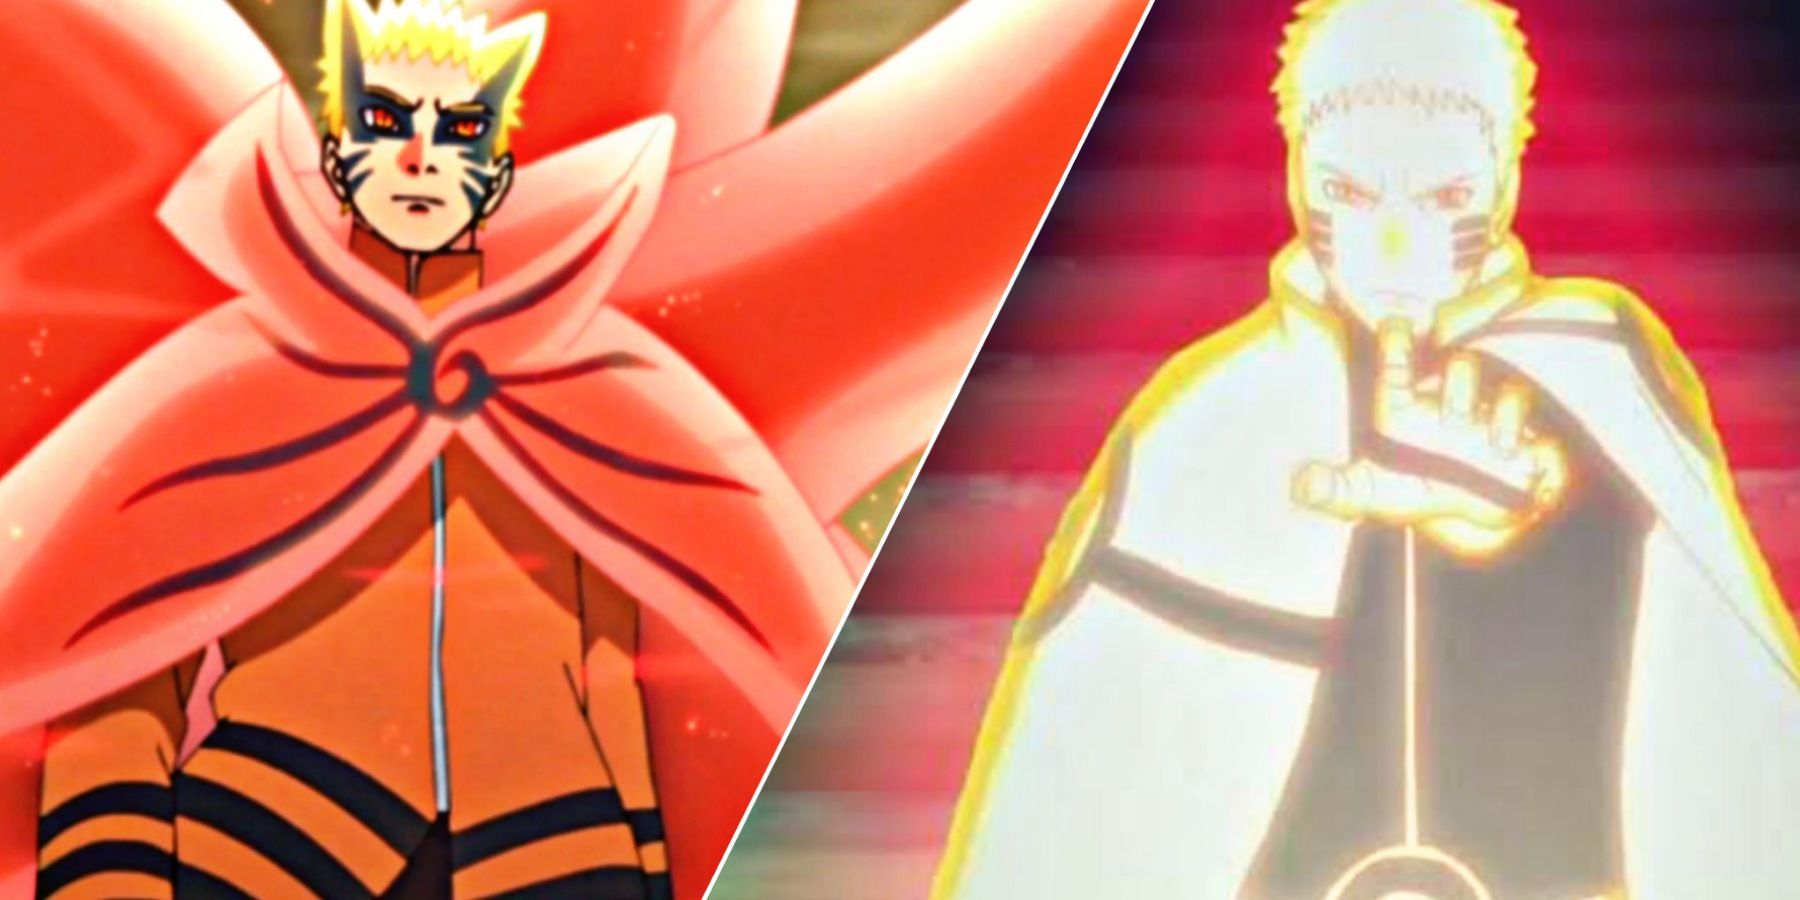 Naruto's timeskip fan art in Boruto makes waves online